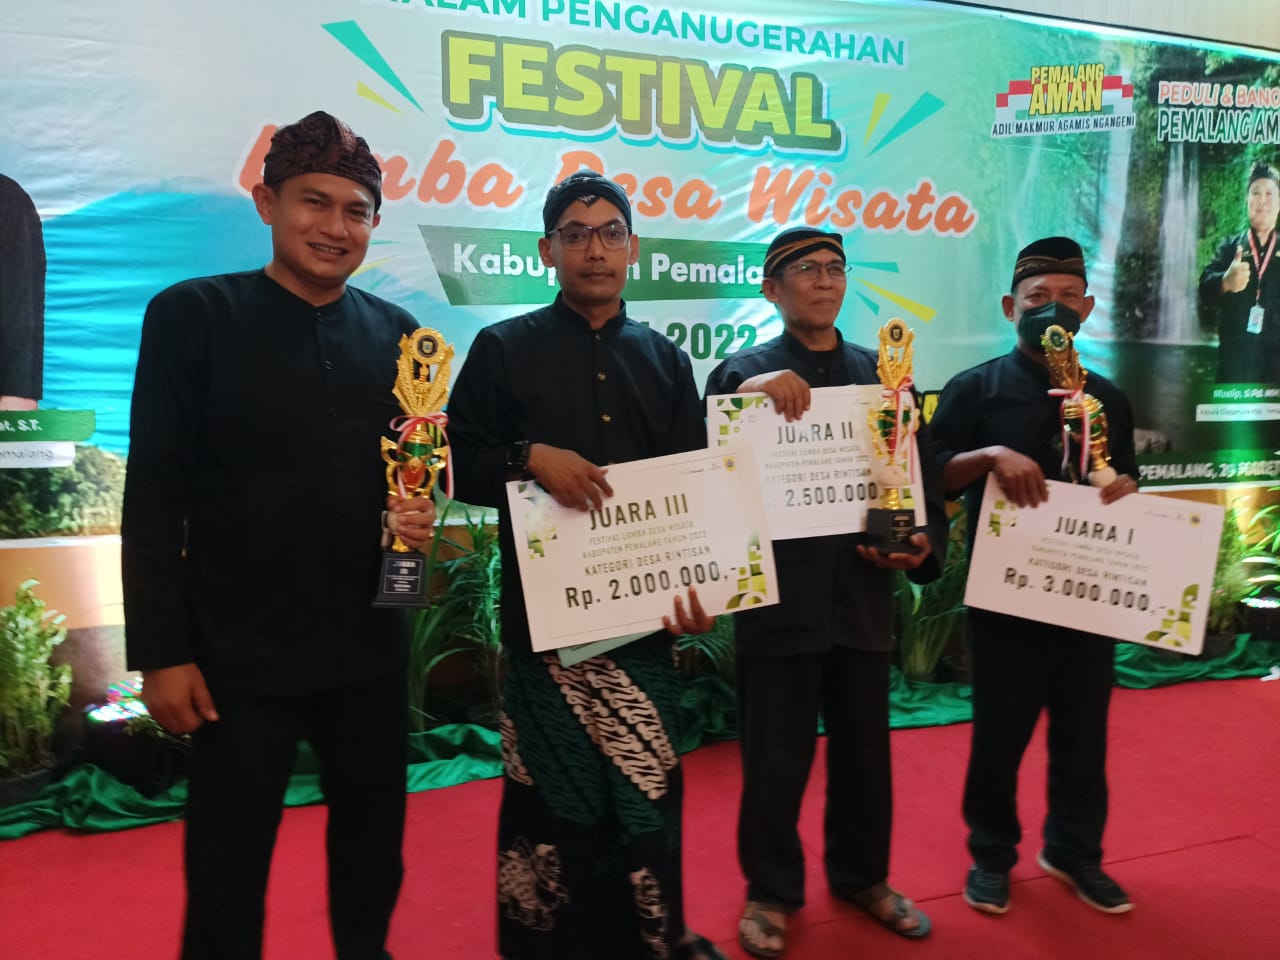 Bulakan Raih Juara III Diajang Festival Lomba Desa Wisata Kab. Pemalang Tahun 2022